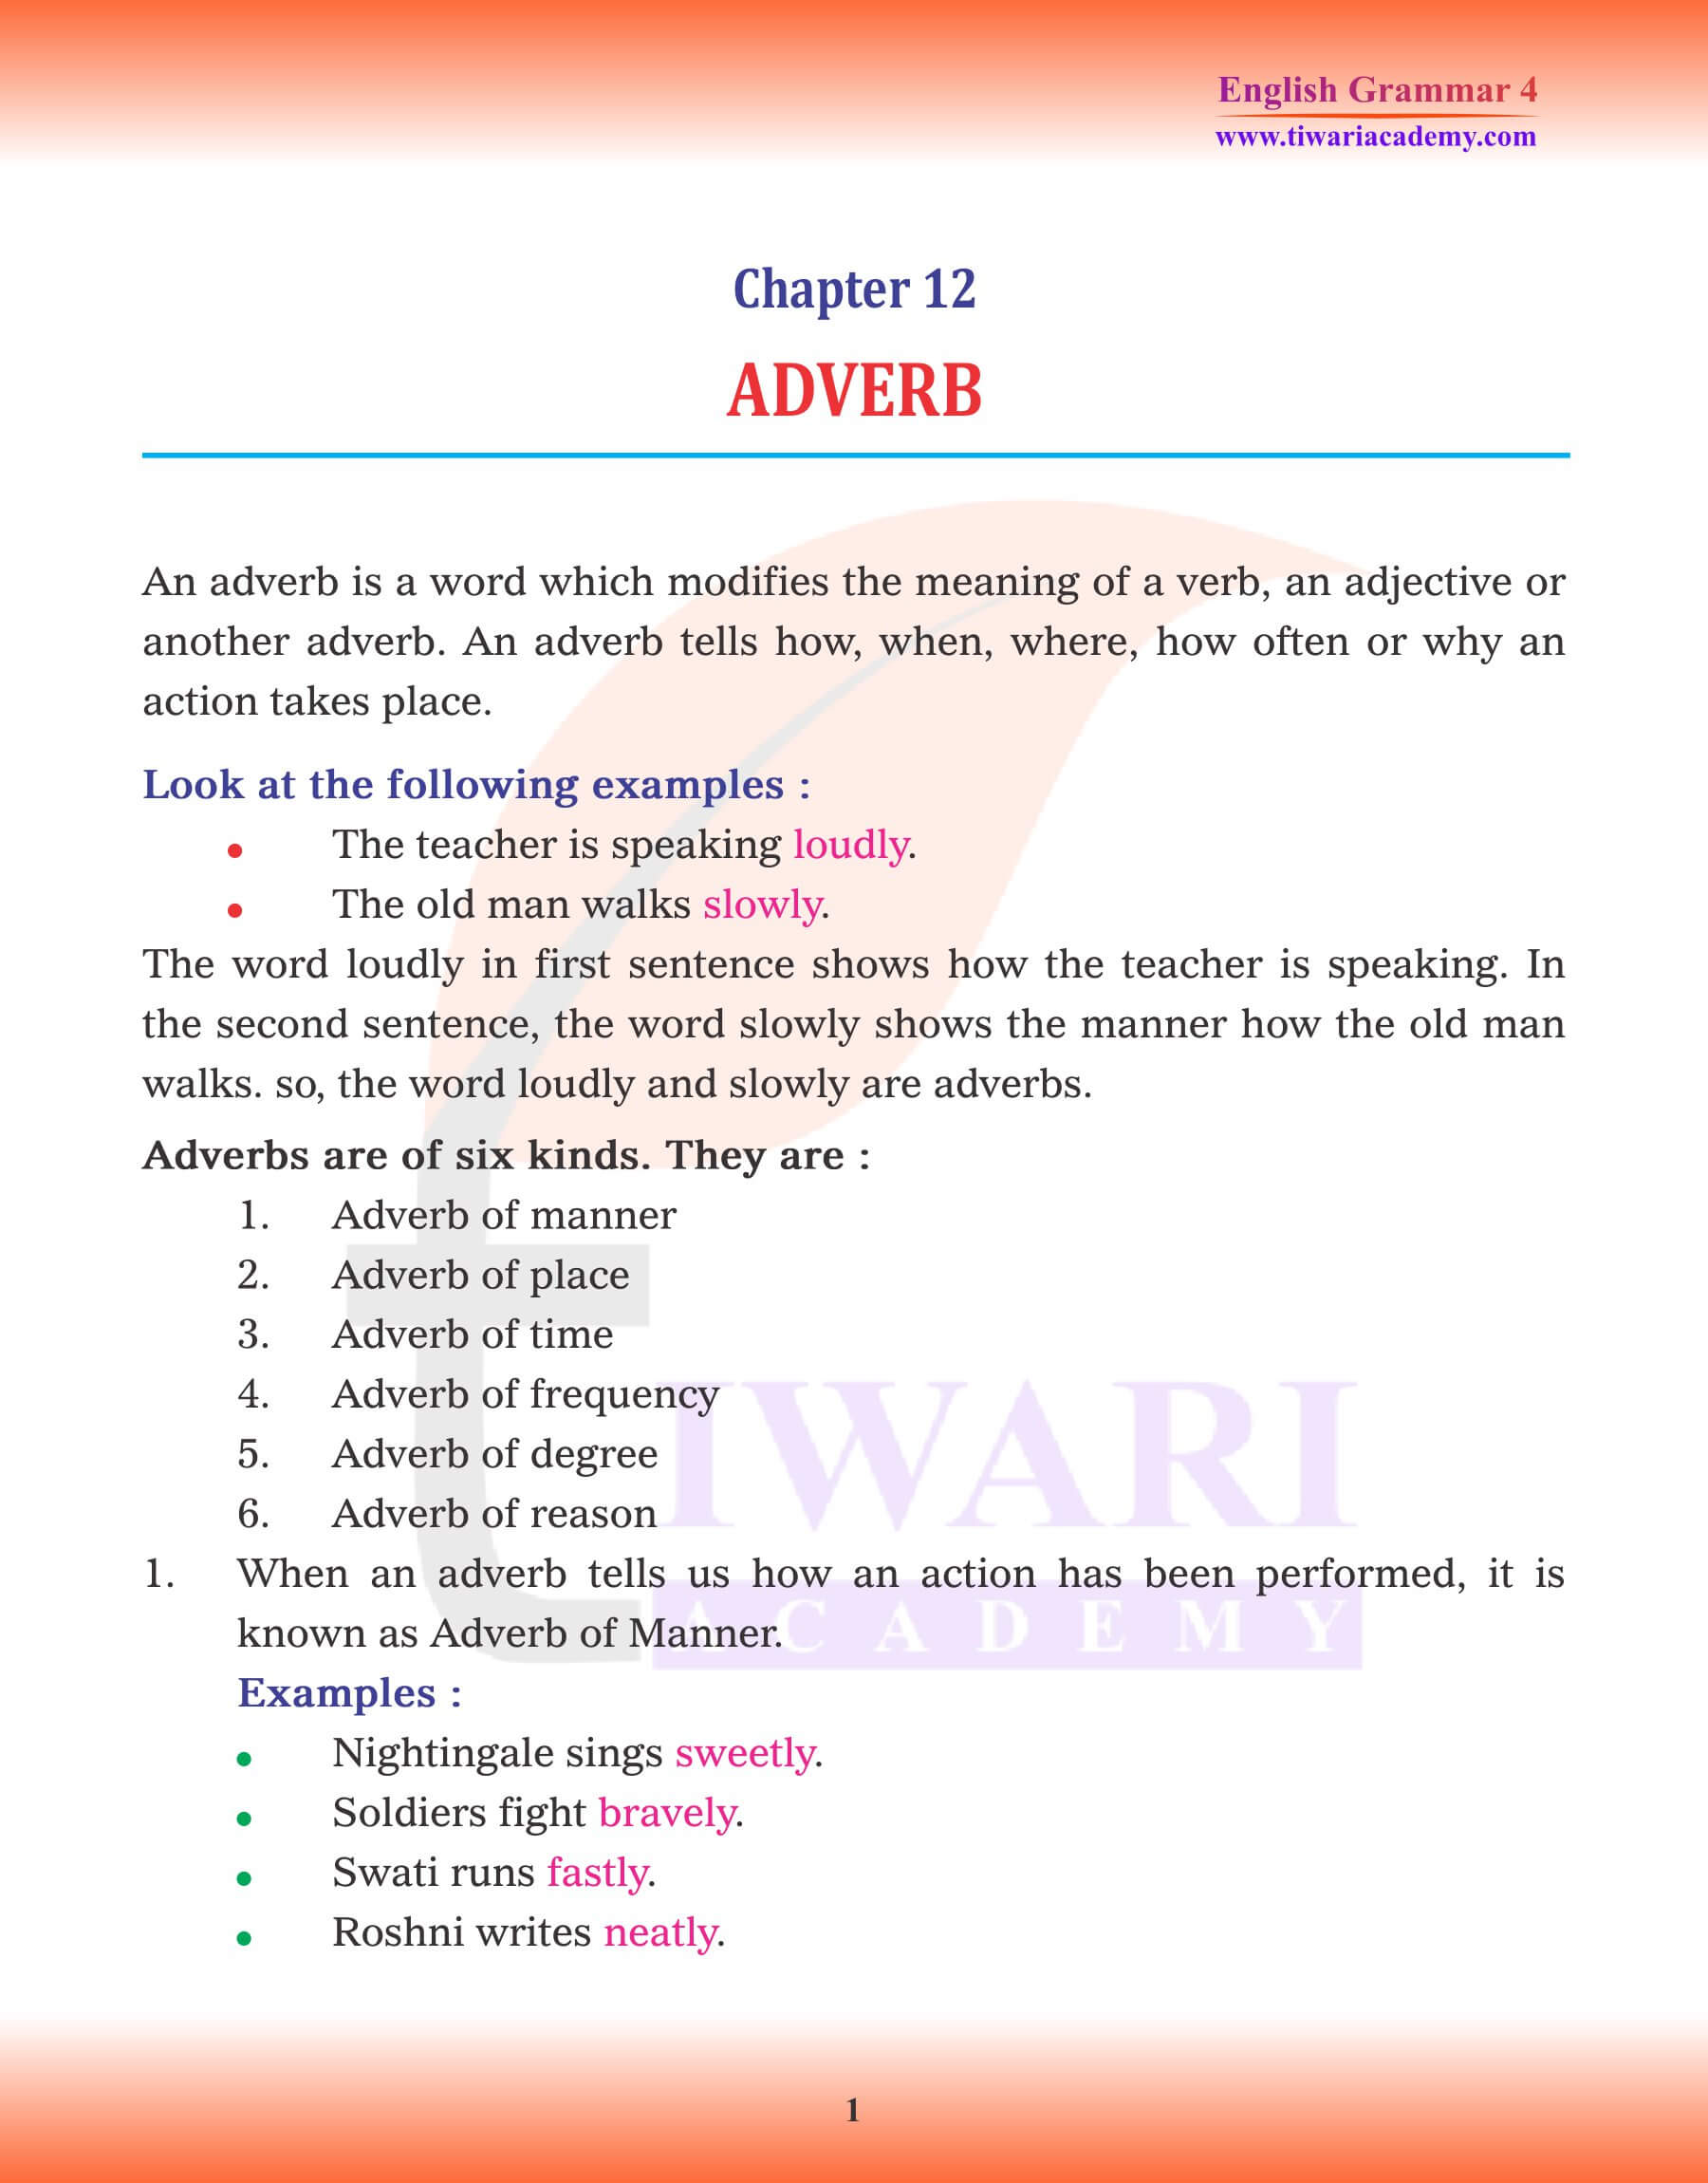 Class 4 Grammar Chapter 12 Adverb